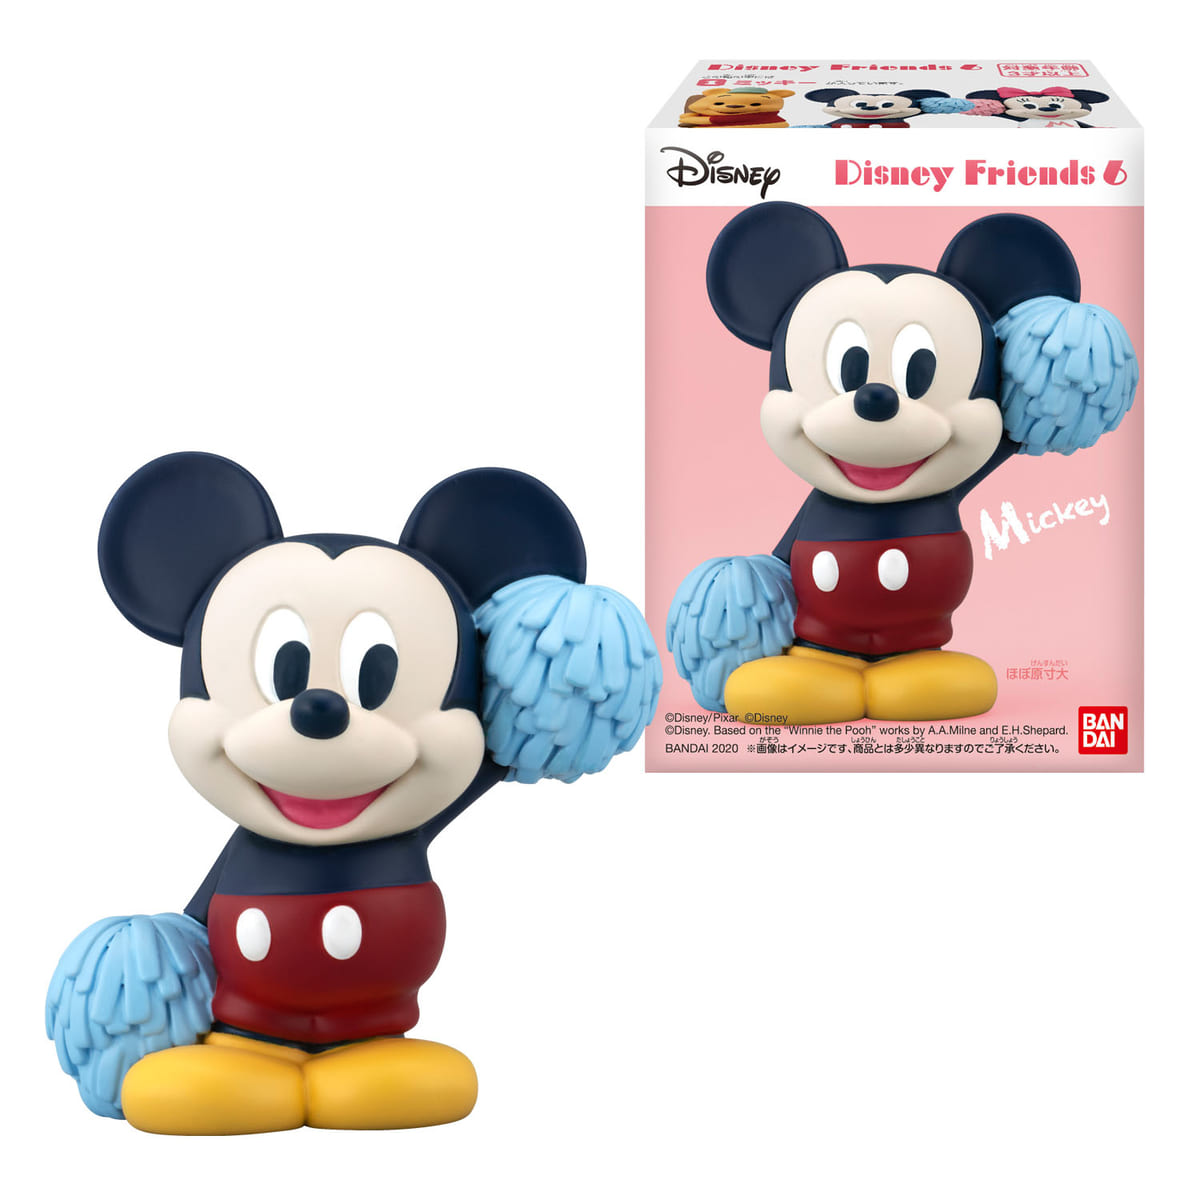 バンダイ 食玩「Disney Friends 6」ミッキーマウス